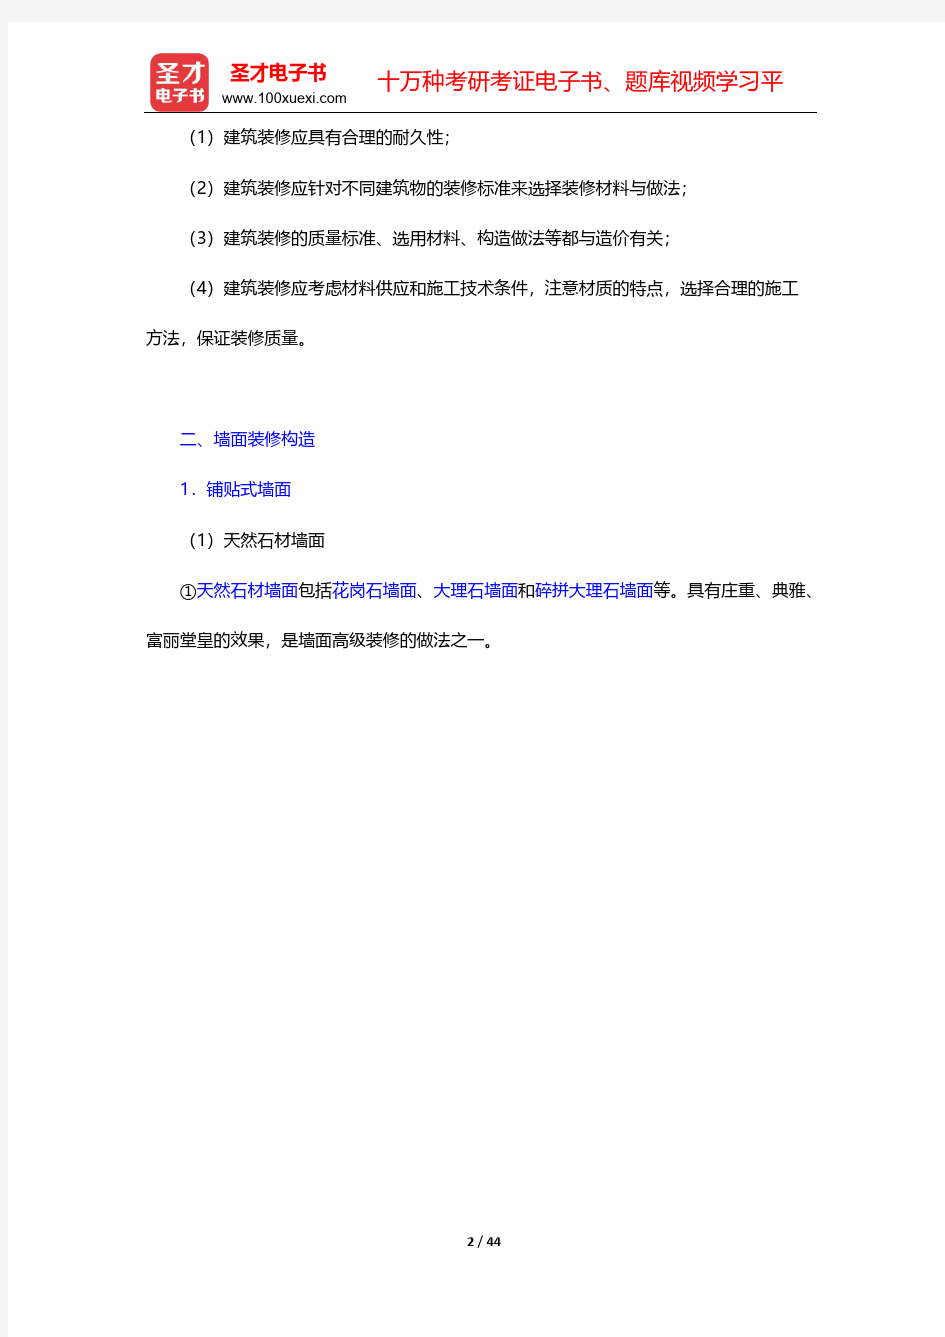 重庆大学《建筑构造(下册)》(第5版)配套辅导书-建筑装修构造【圣才出品】